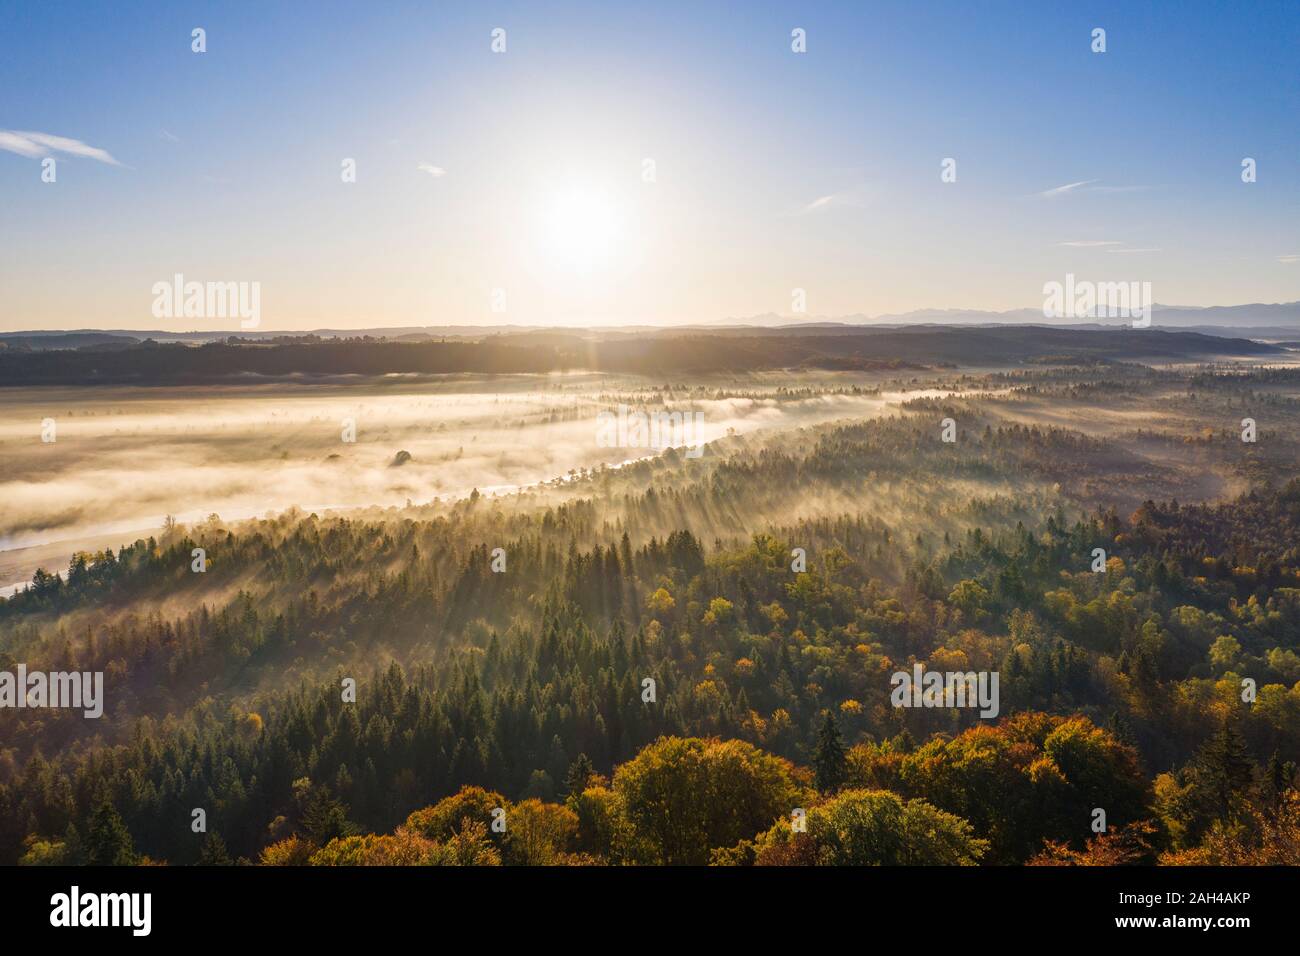 Allemagne, Berlin, dans la réserve naturelle, Isarauen, vue aérienne de la rivière Isar, au lever du soleil Banque D'Images